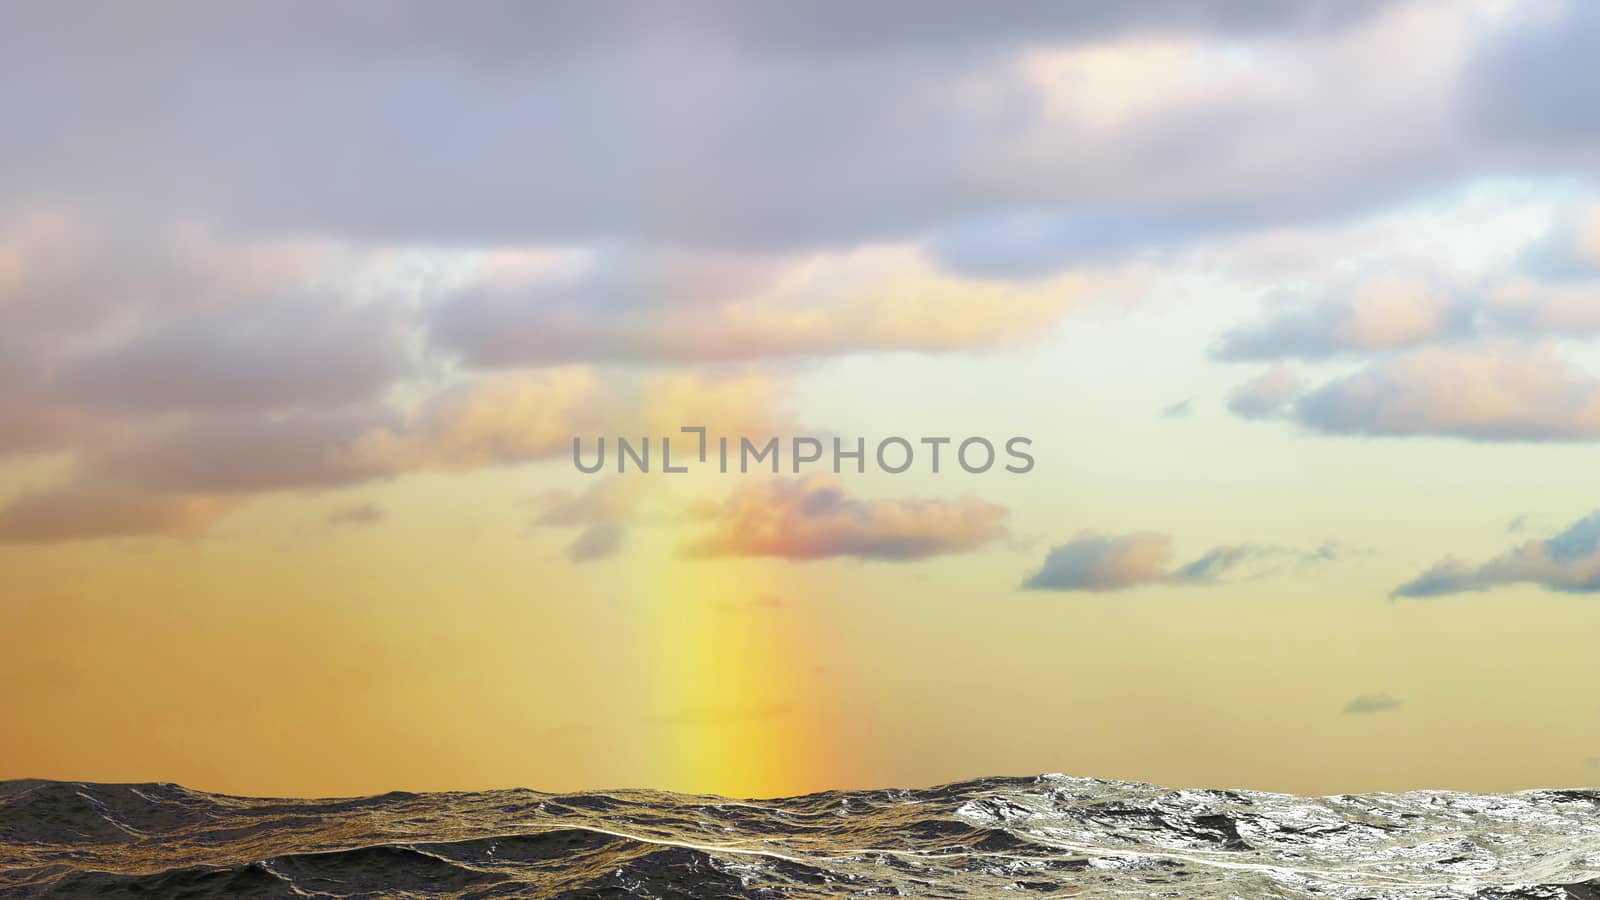 Rainbow over the sea in Denmark